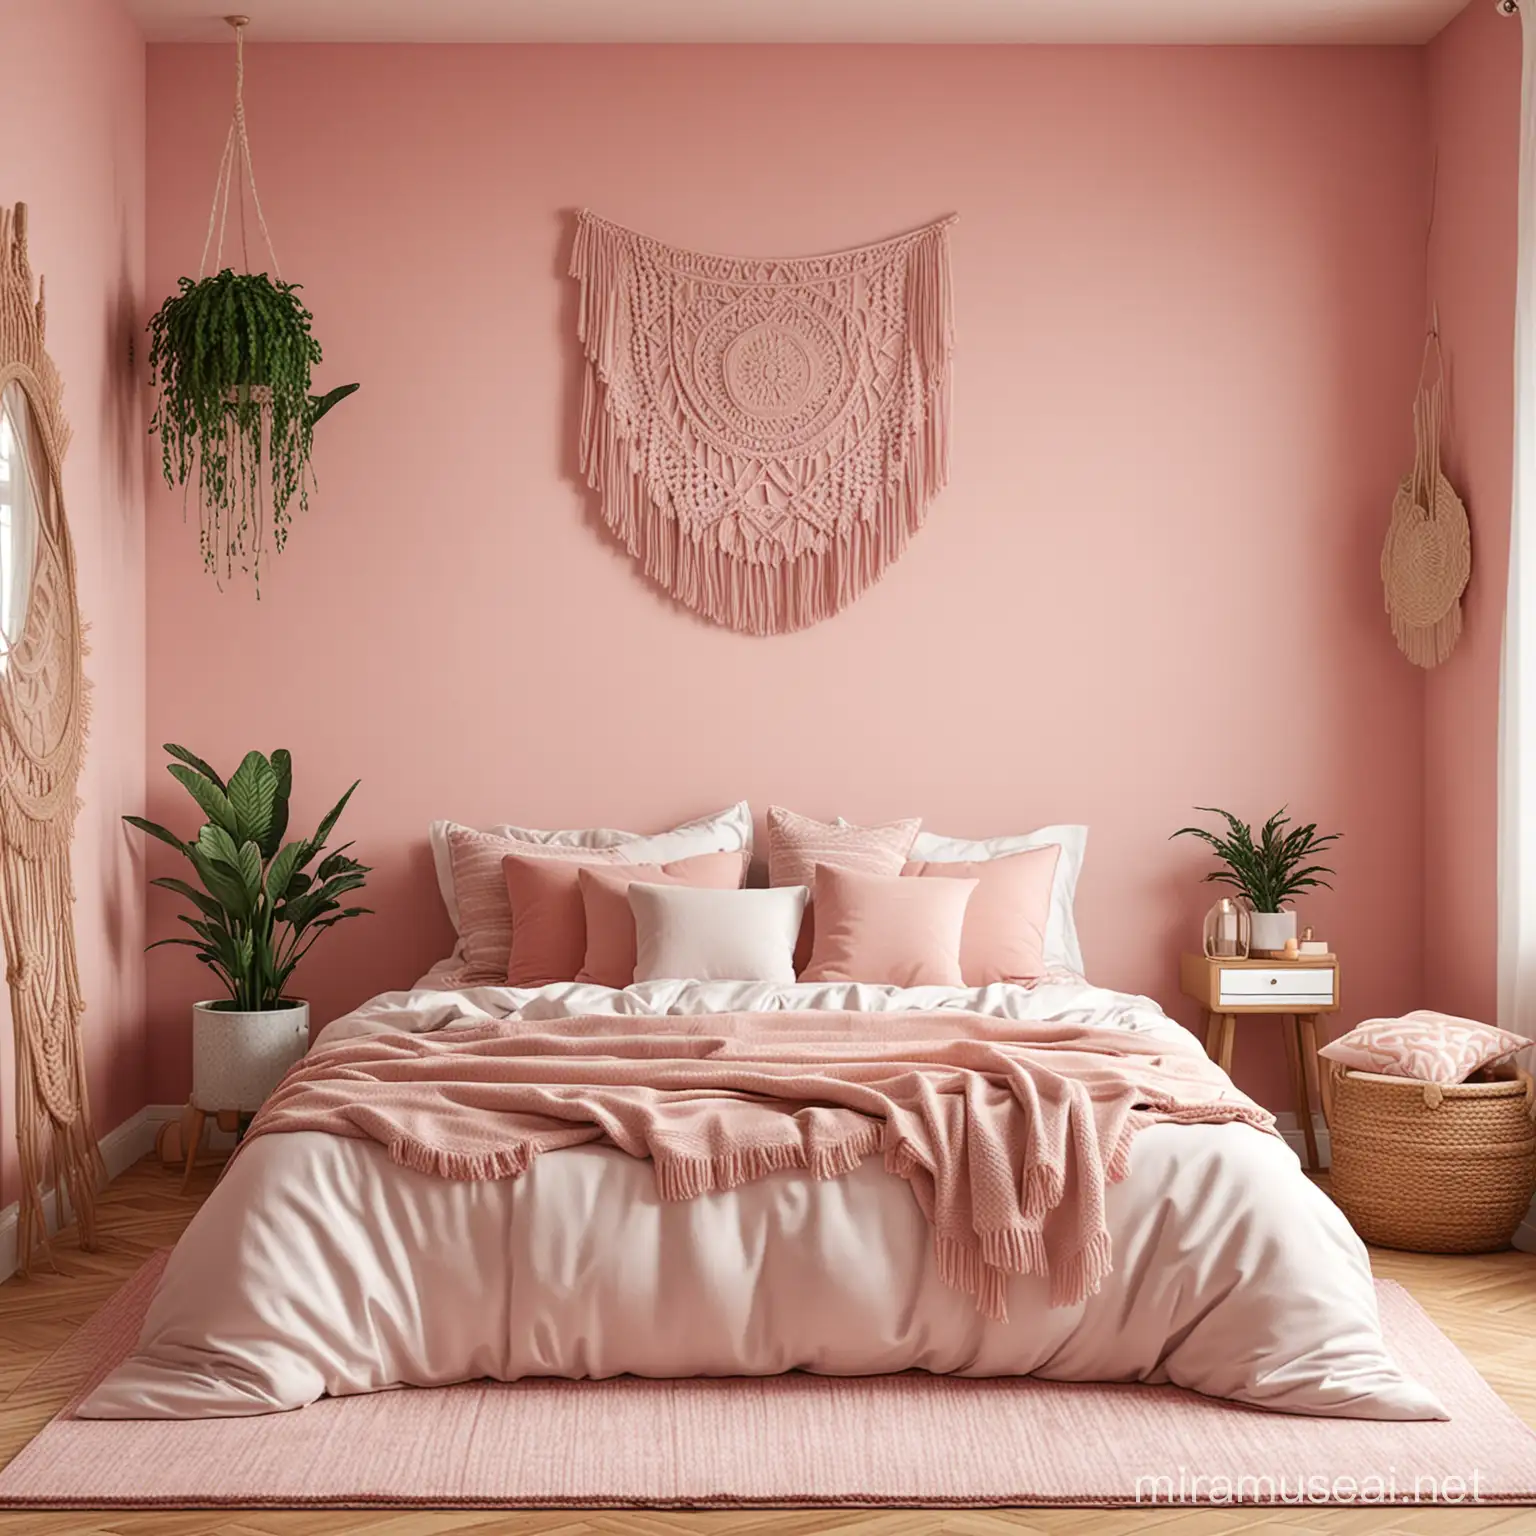 Boho Bedroom Mockup with Pinkish Room Decor